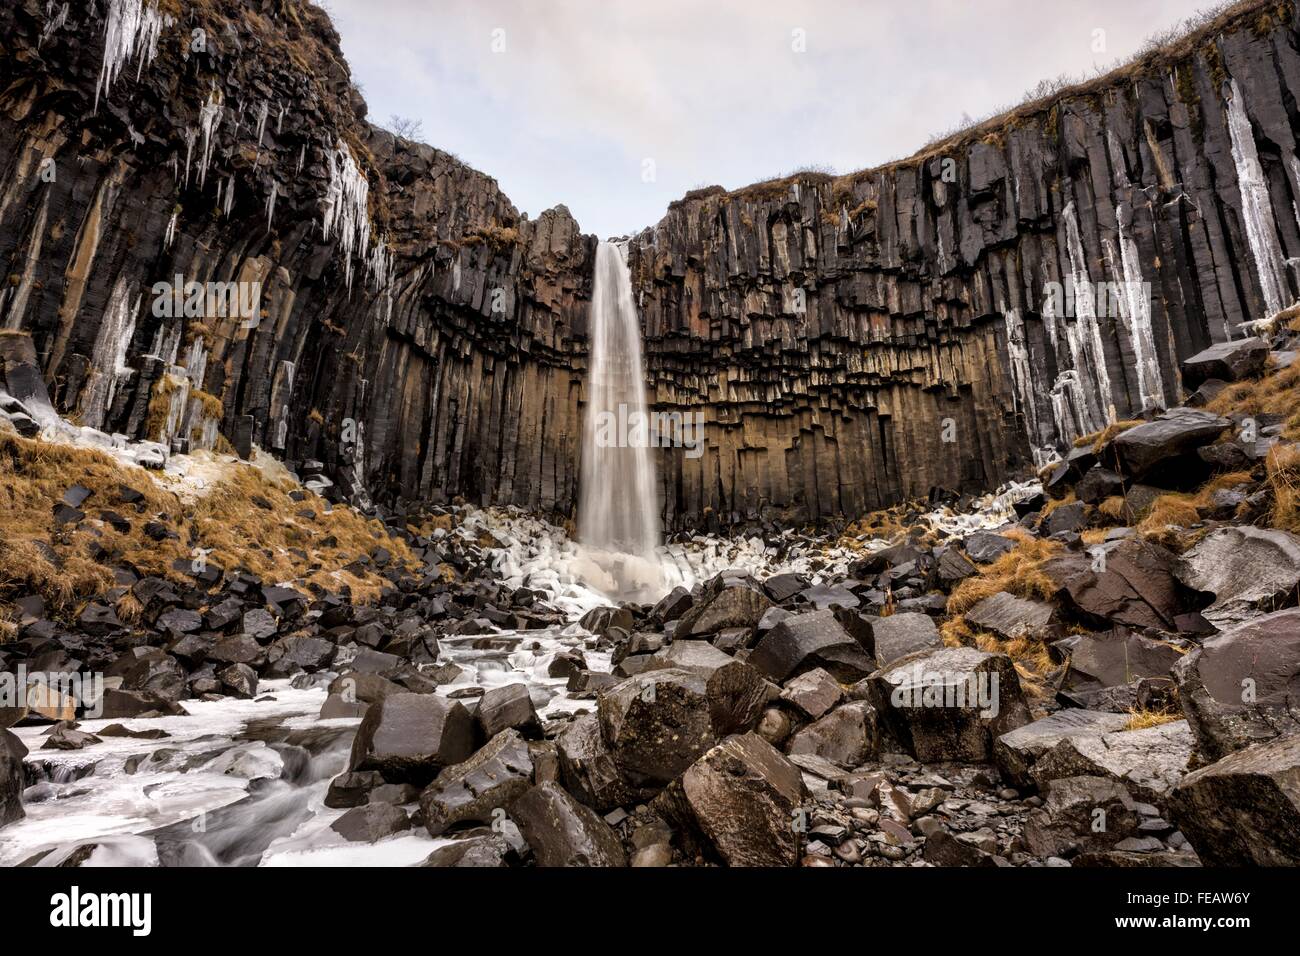 Svartifoss waterfall in Skaftafell in Vatnajökull National Park, Iceland Stock Photo